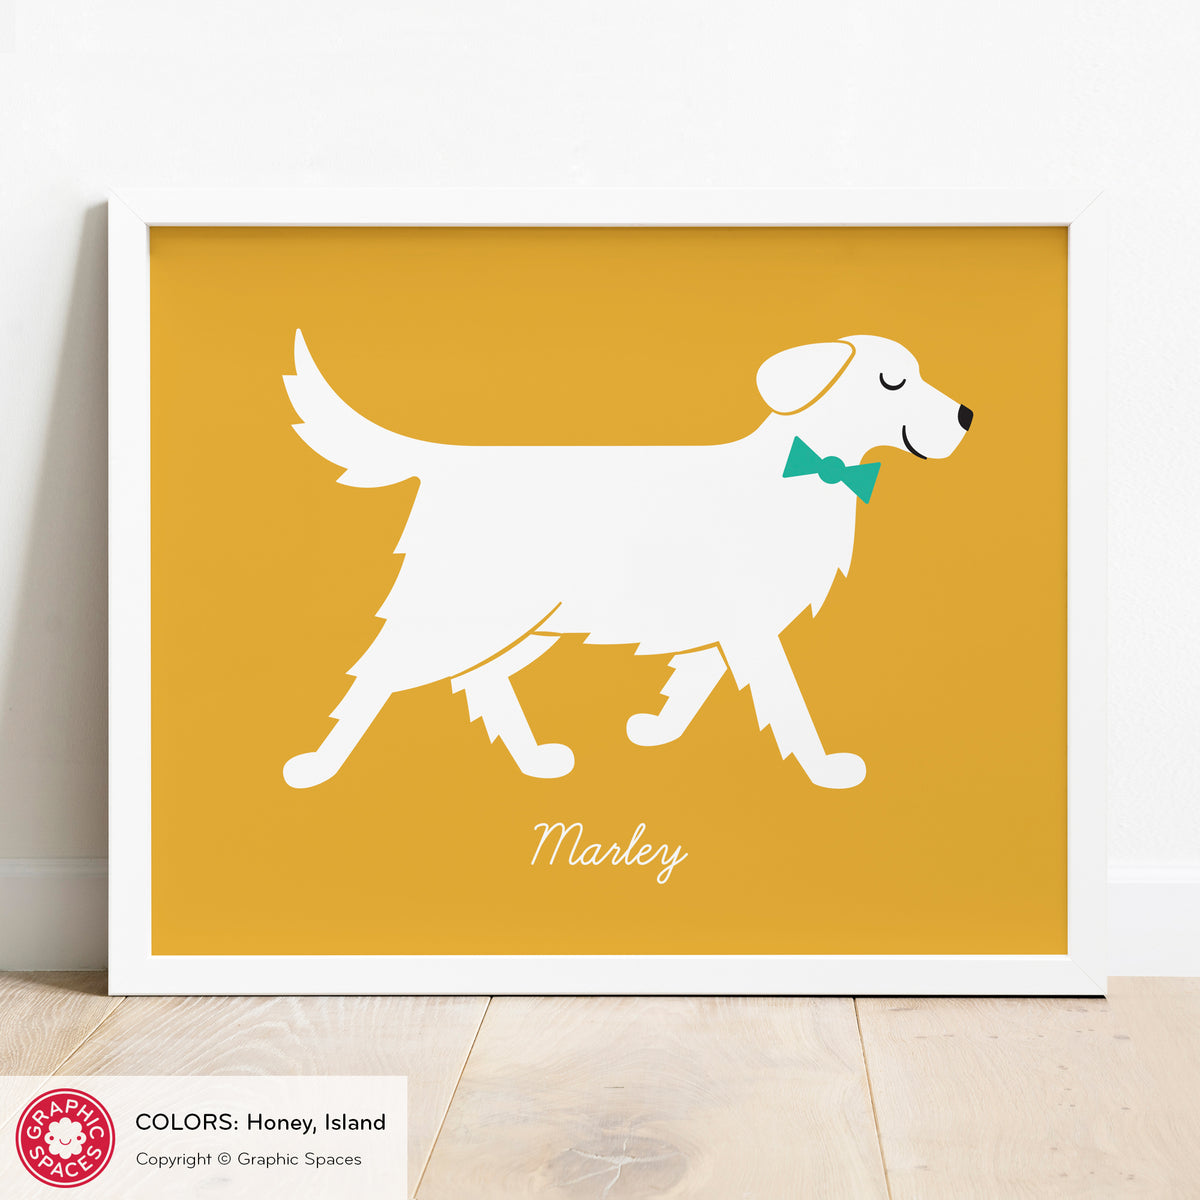 Golden Retriever Dog Art Print